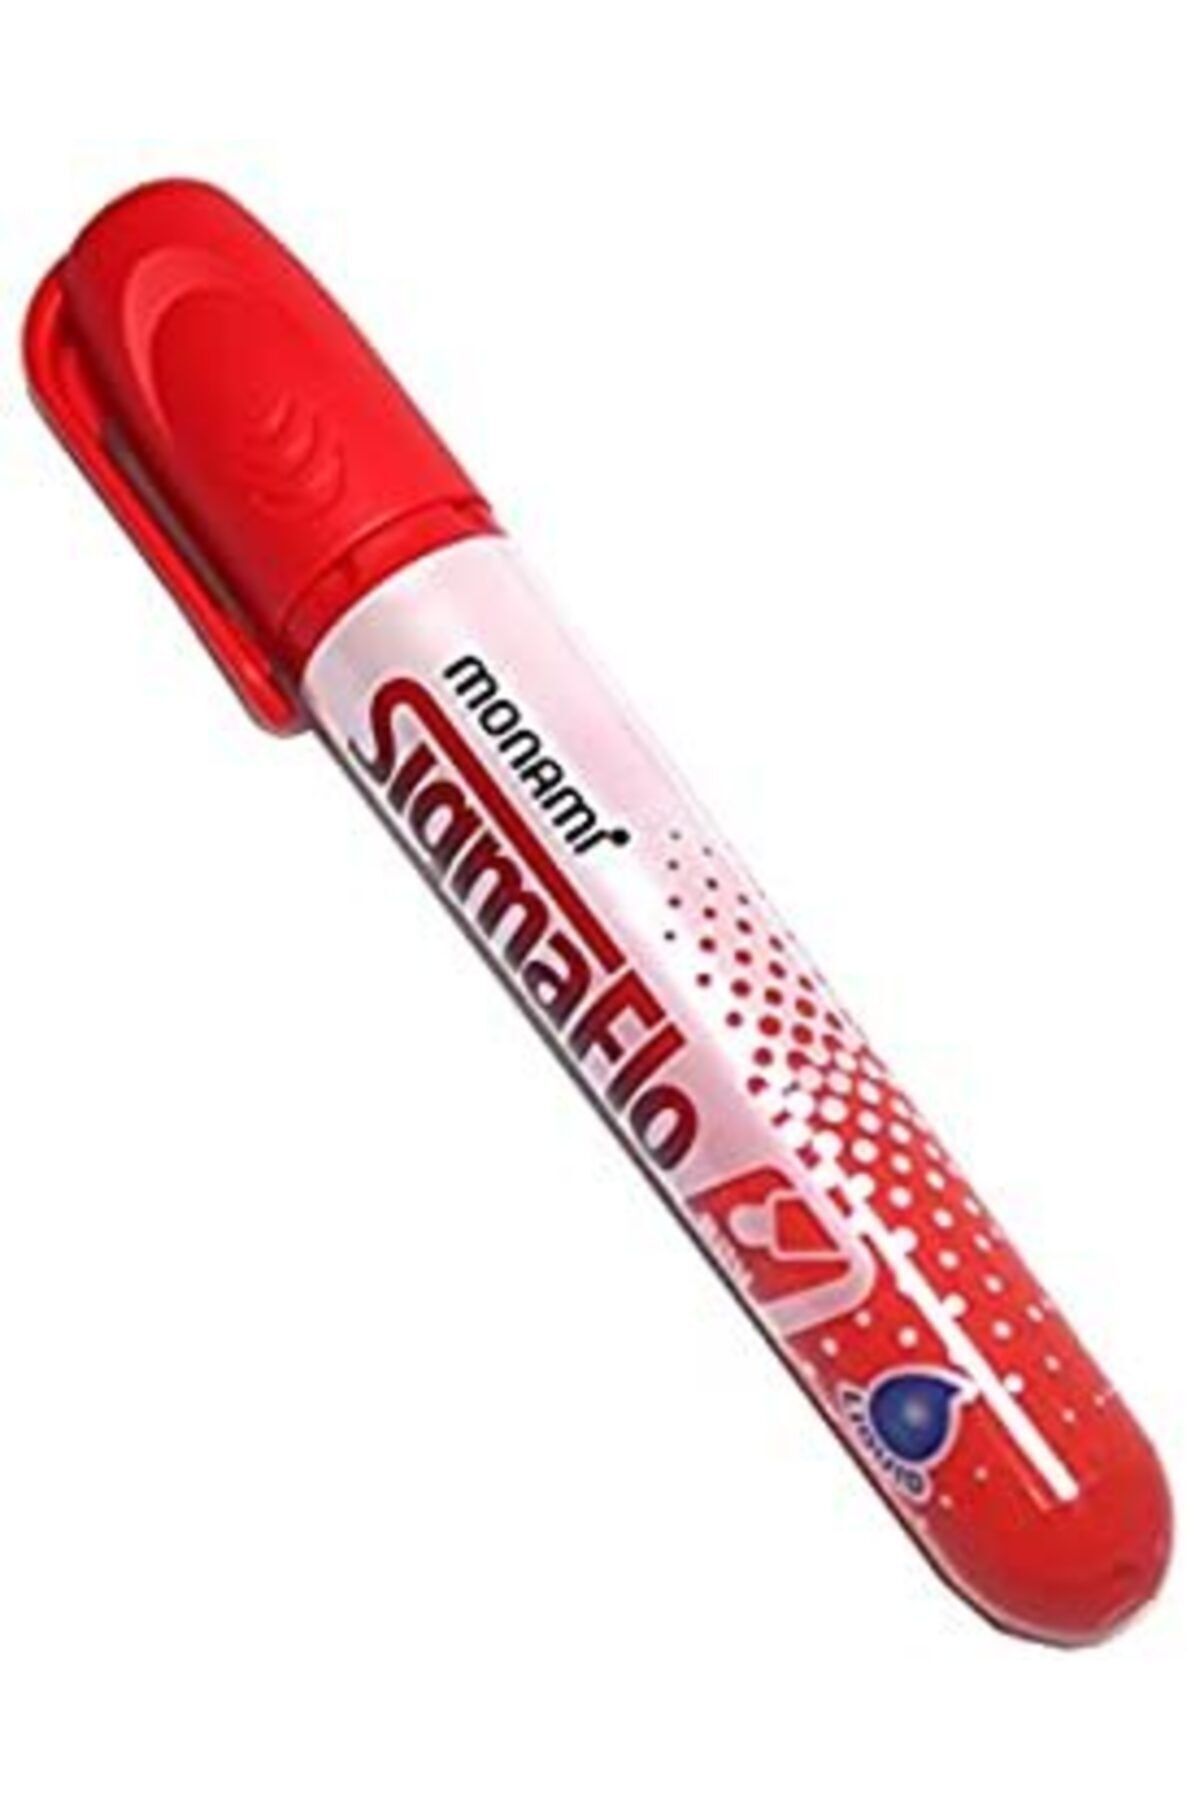 Monami Beyaz Tahta Kalemi Sigmaflo Kırmızı Renk 6 Adet